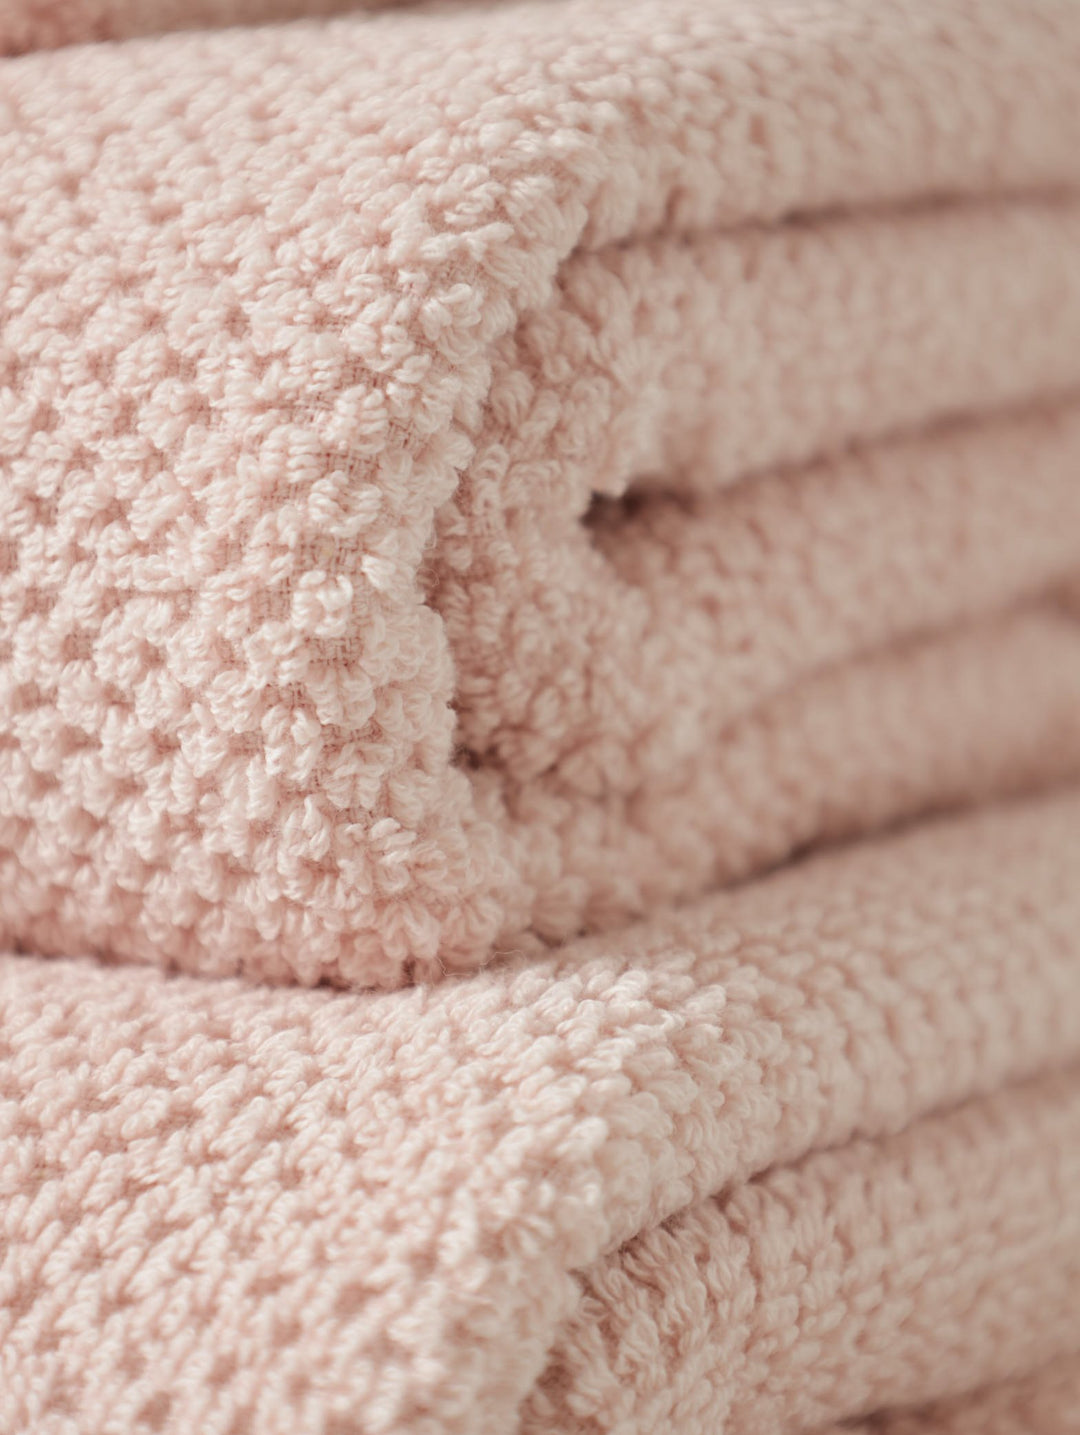 Premium Textured Towels - Rose